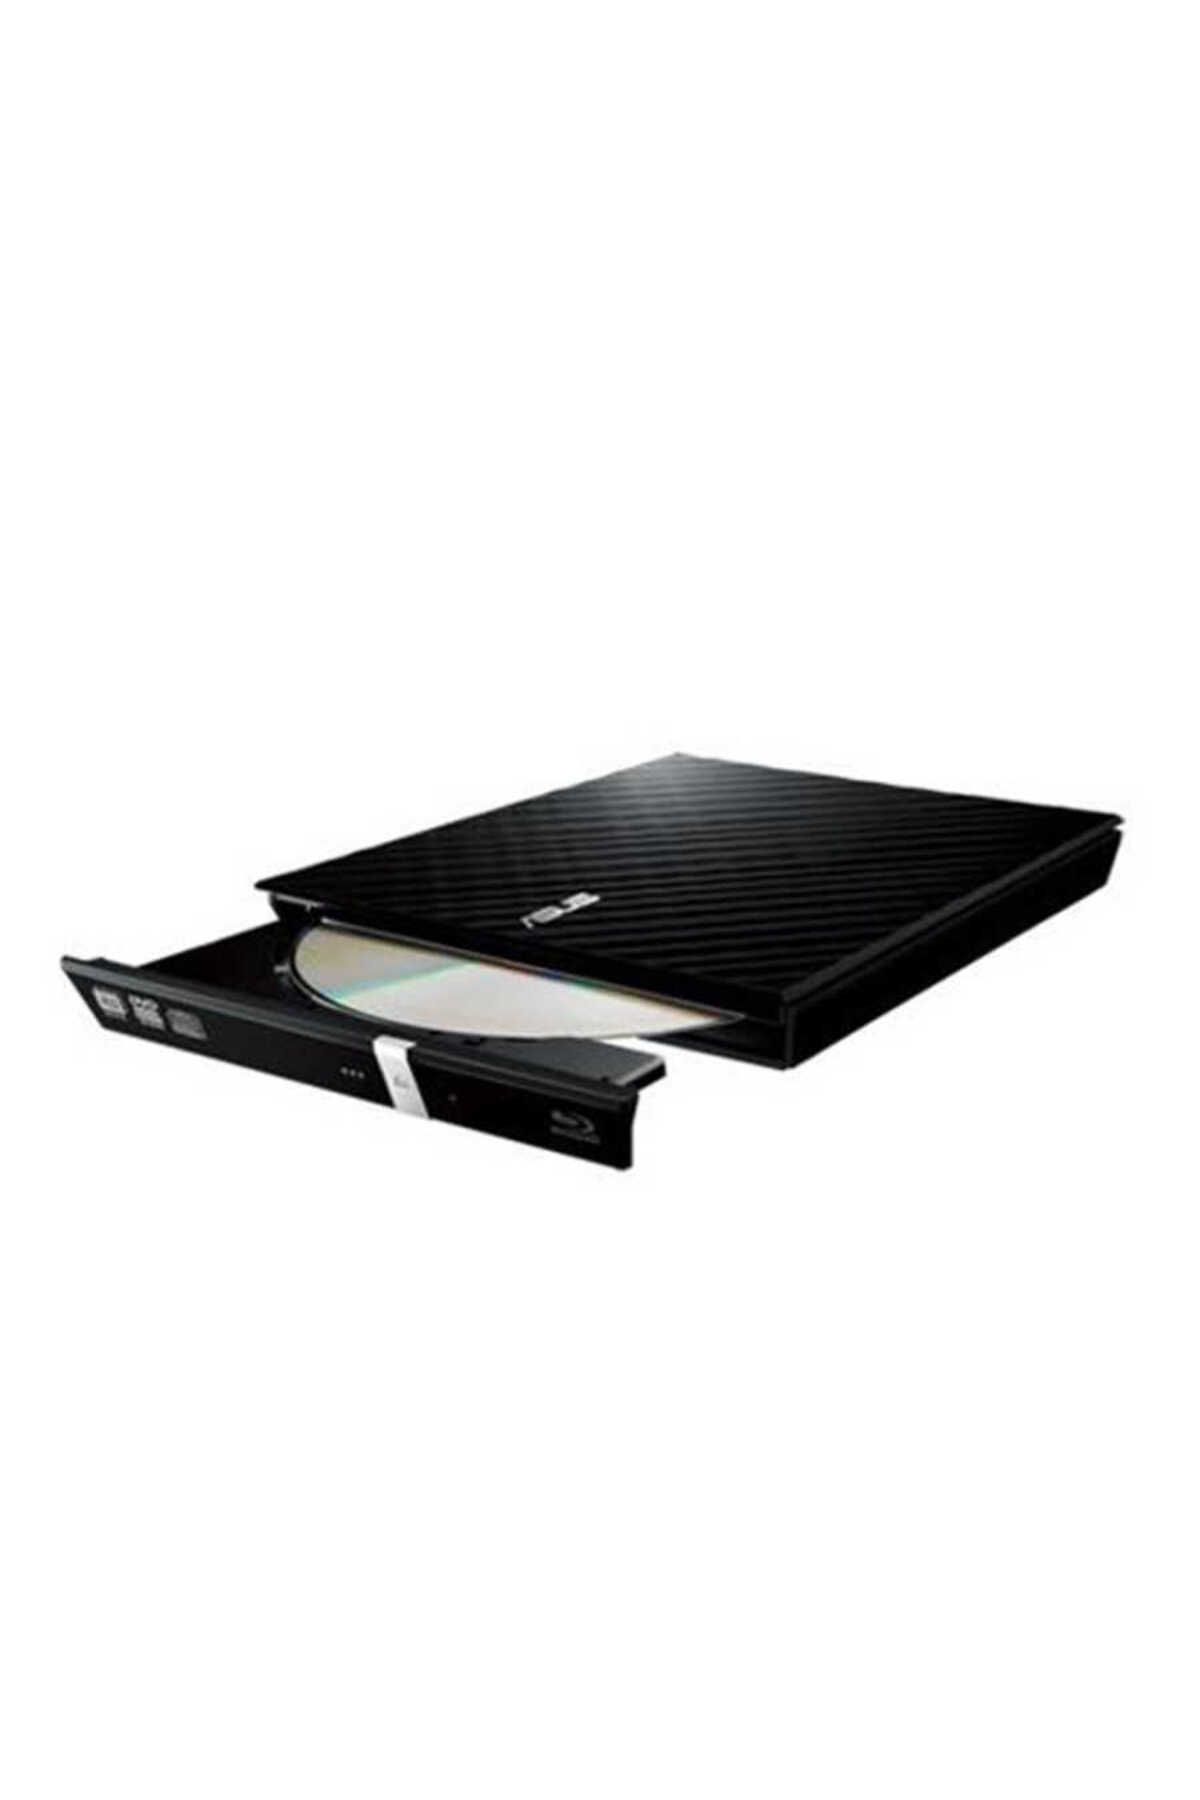 ASUS SDRW-08D2S-U Lite 8X 24X Siyah USB Harici DVD-RW